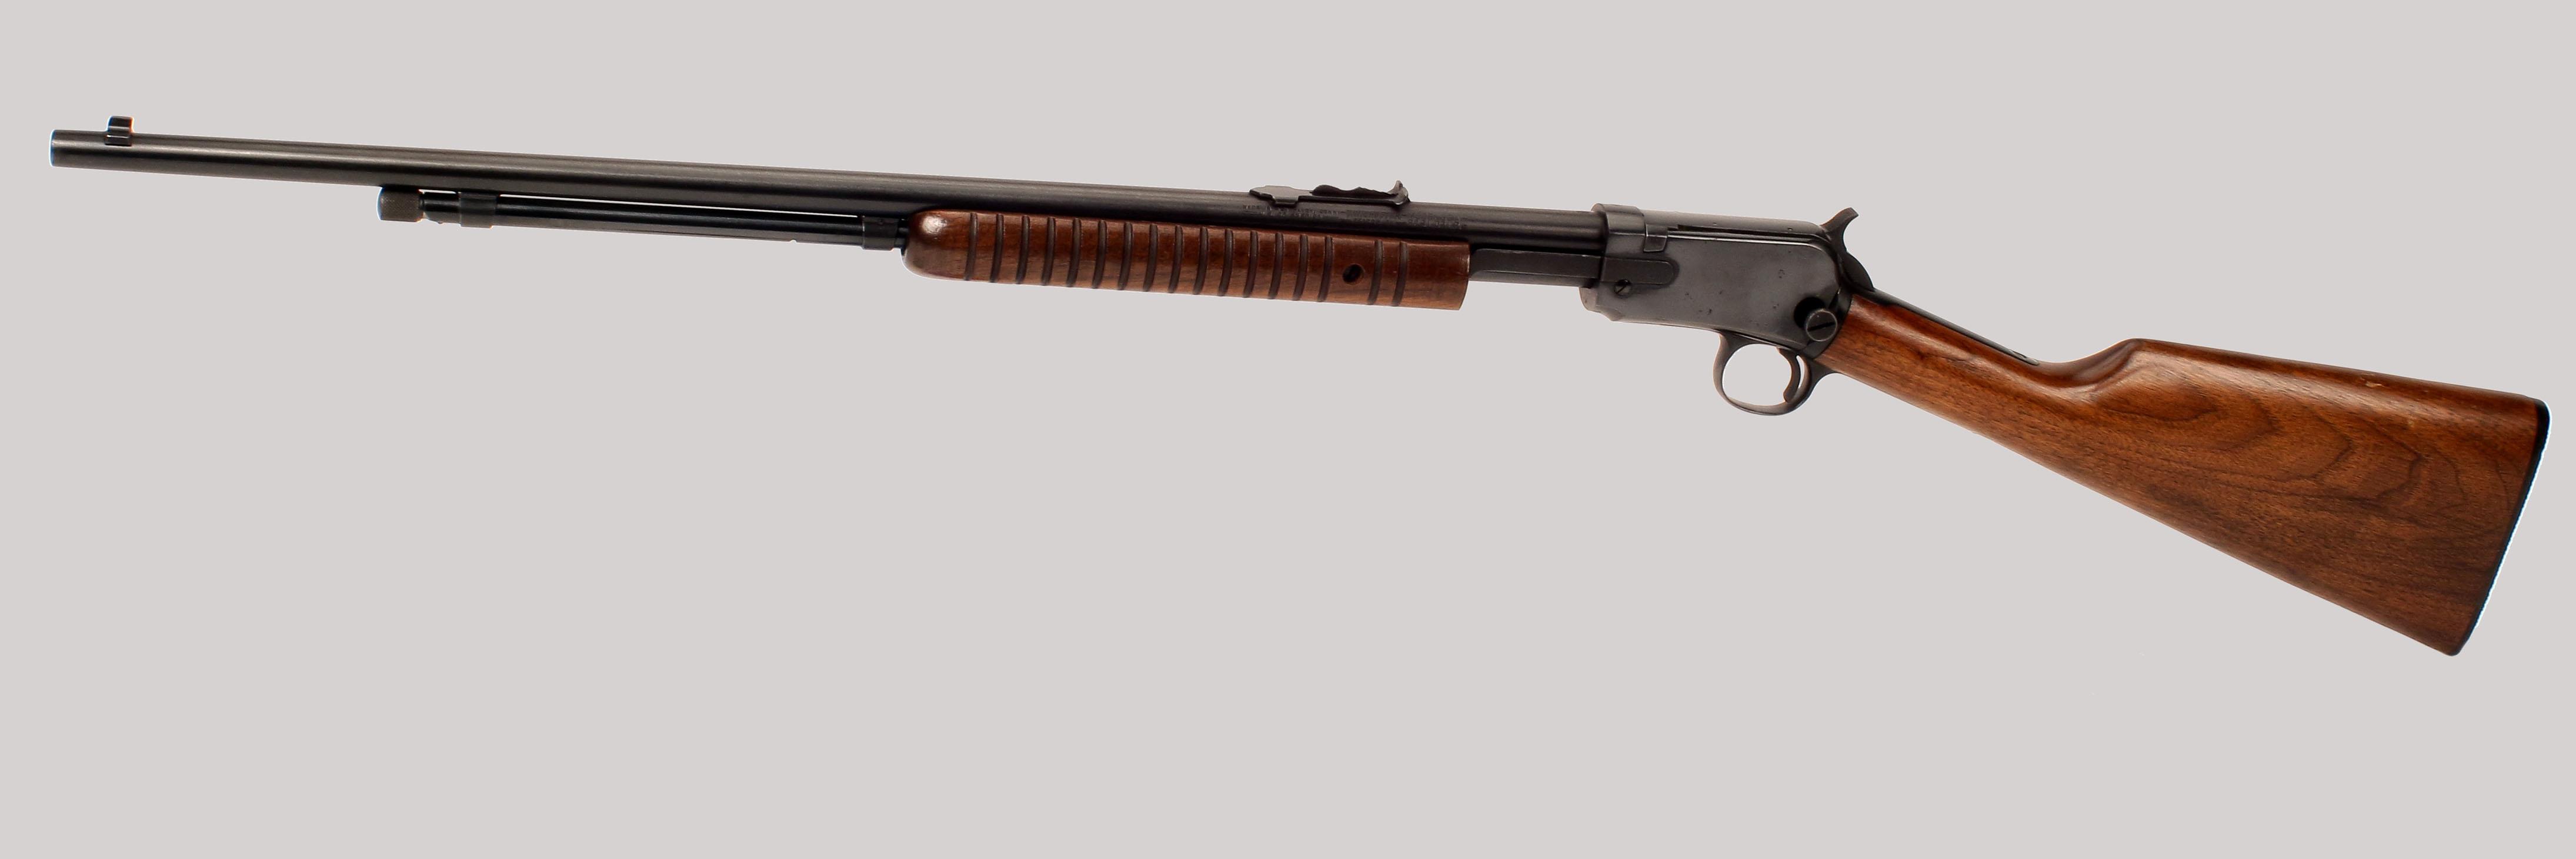 Winchester 62A Rifle Guns > Rifles > Winchester Rifles - Modern Pump